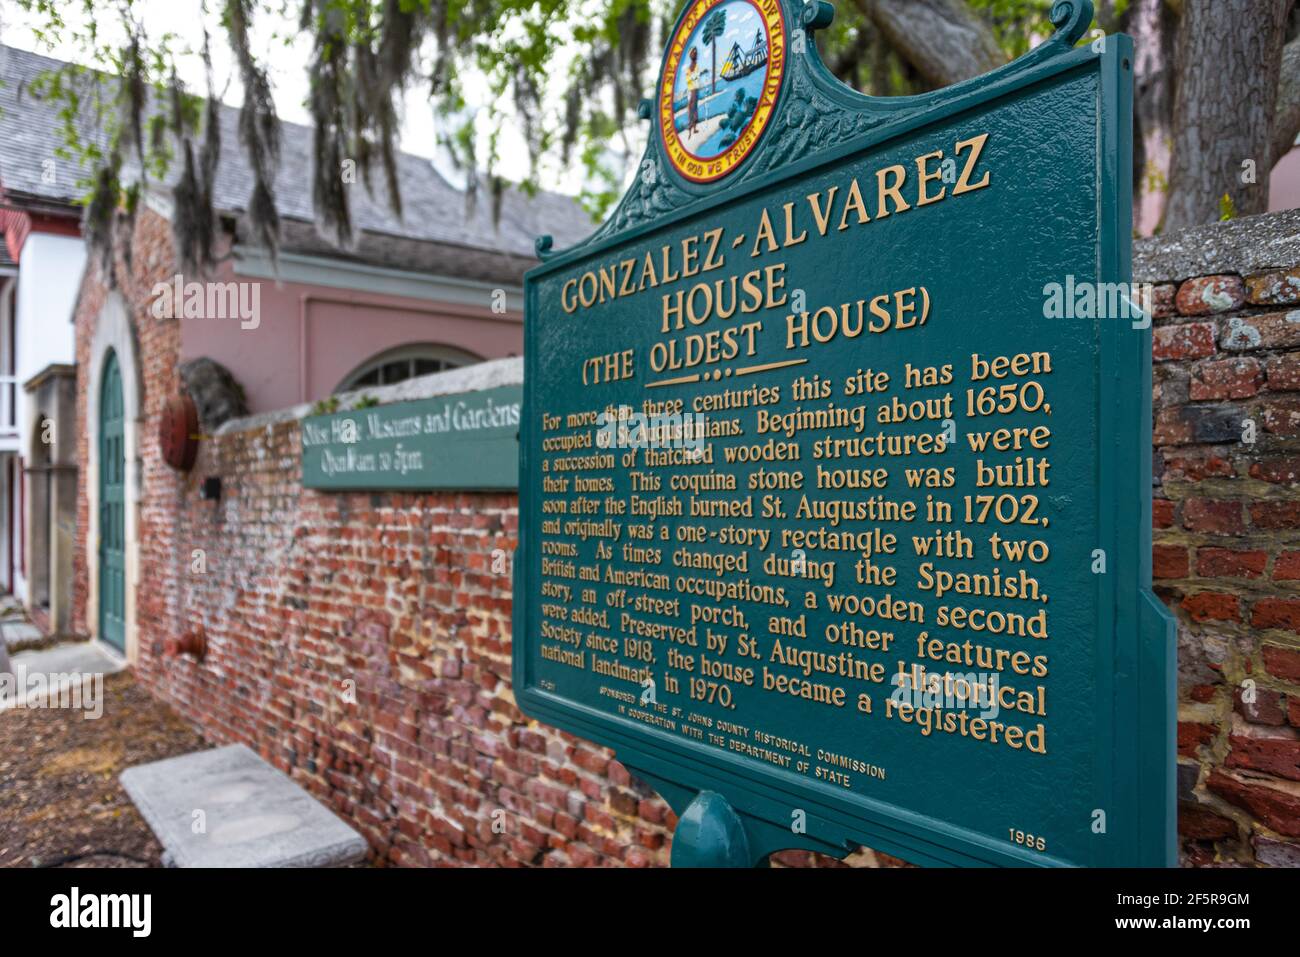 La Maison Gonzalez-Alverez (la plus ancienne maison) est un monument historique à Saint Augustine, FL, avec des travaux d'origine datant d'environ 1723. (ÉTATS-UNIS) Banque D'Images